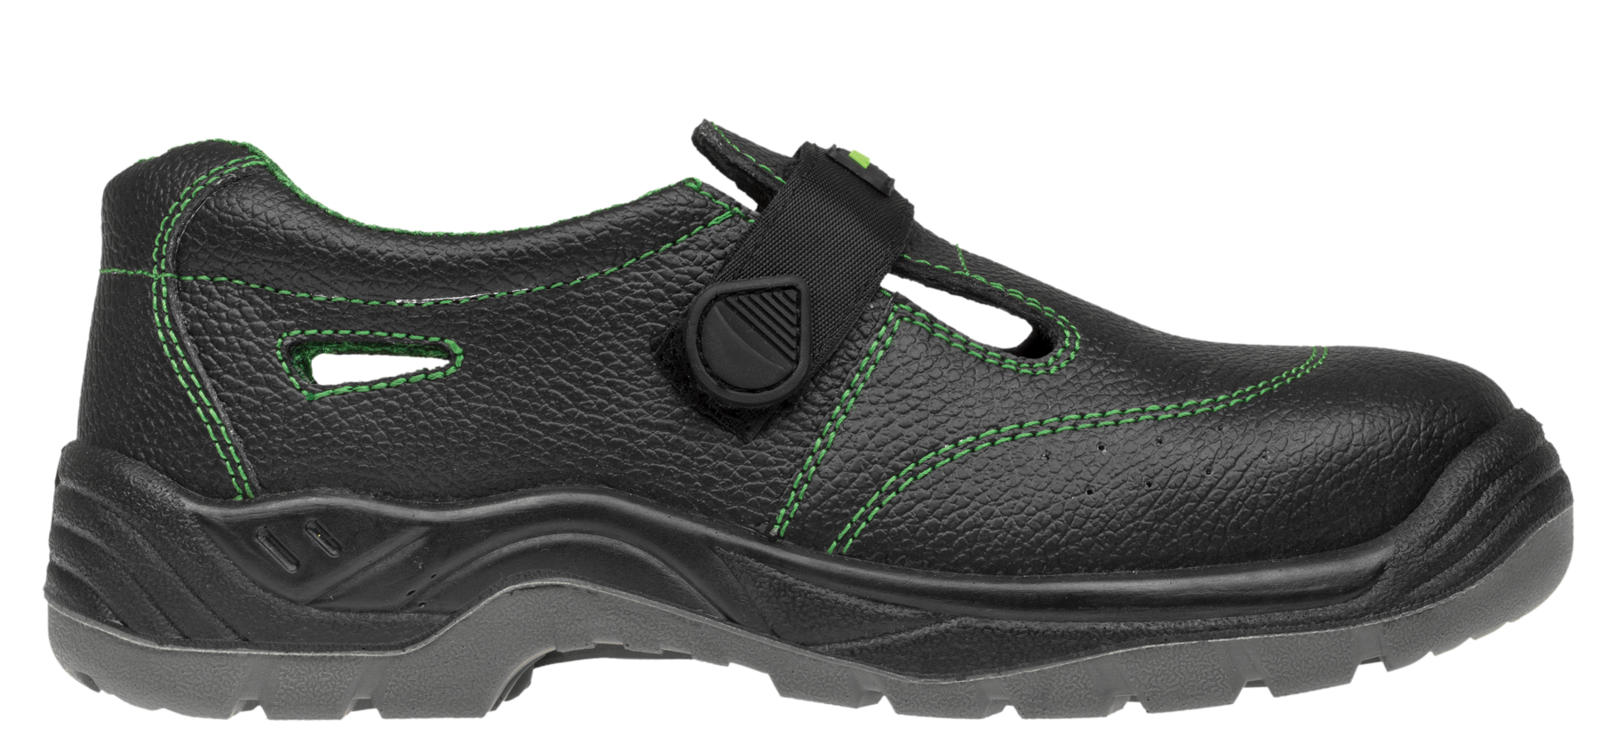 Bezpečnostné sandále Adamant Classic S1 - veľkosť: 43, farba: čierna